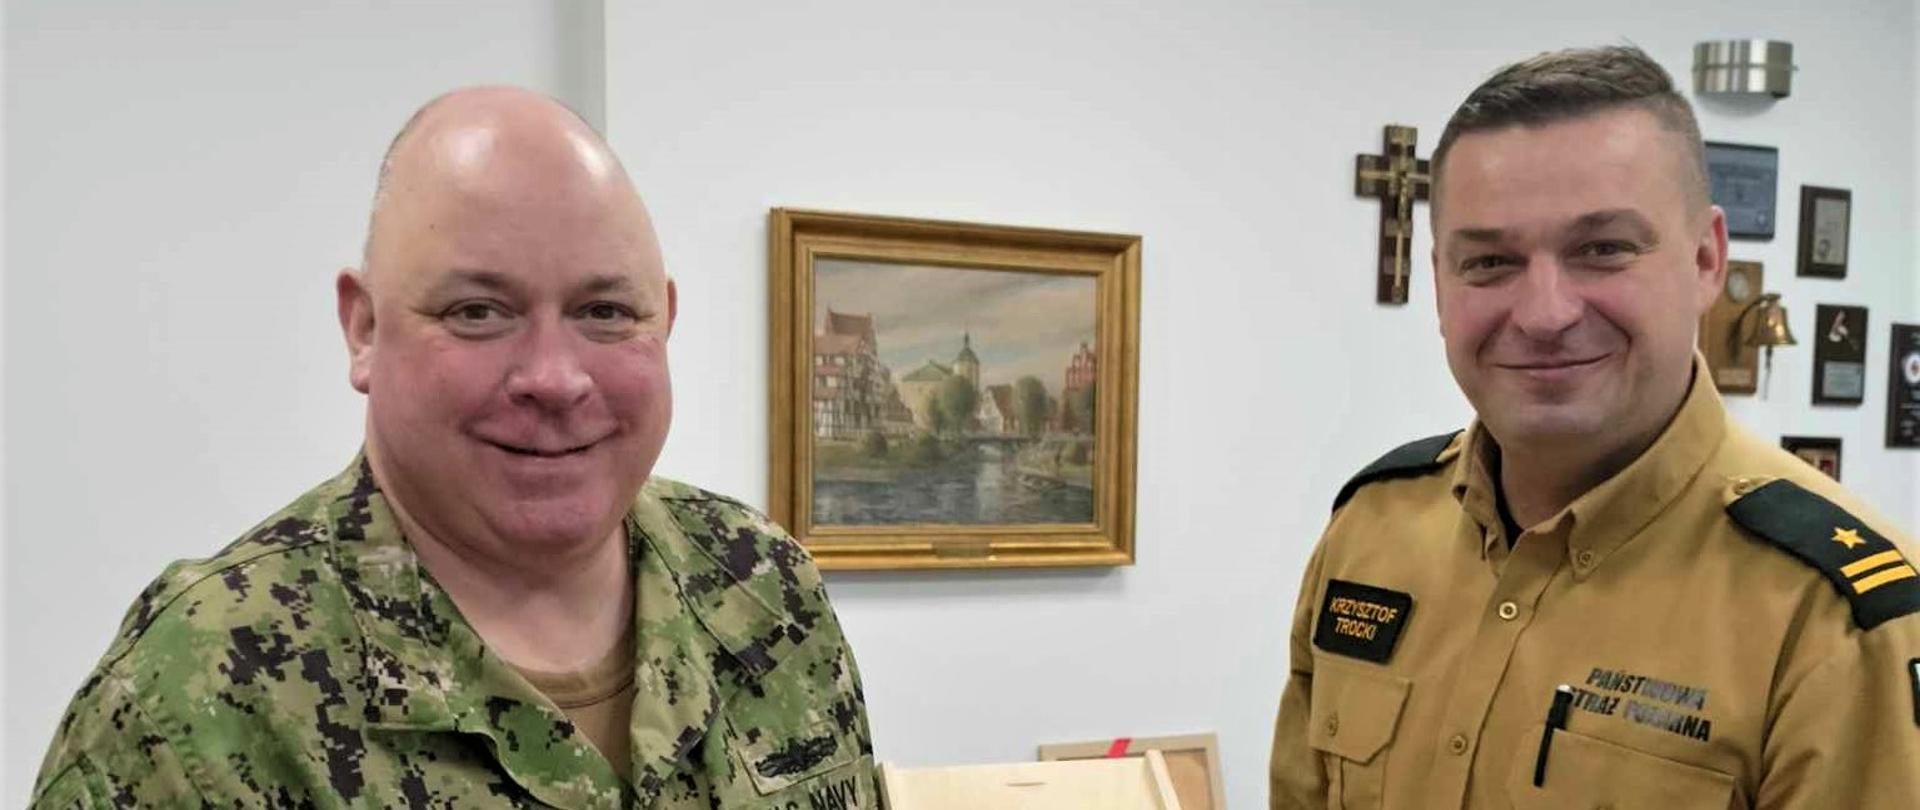 Zdjęcie przedstawia dowódcę capt. John R. Bartak oraz komendanta miejskiego PSP w Słupsku mł. bryg. Krzysztof Trockiego